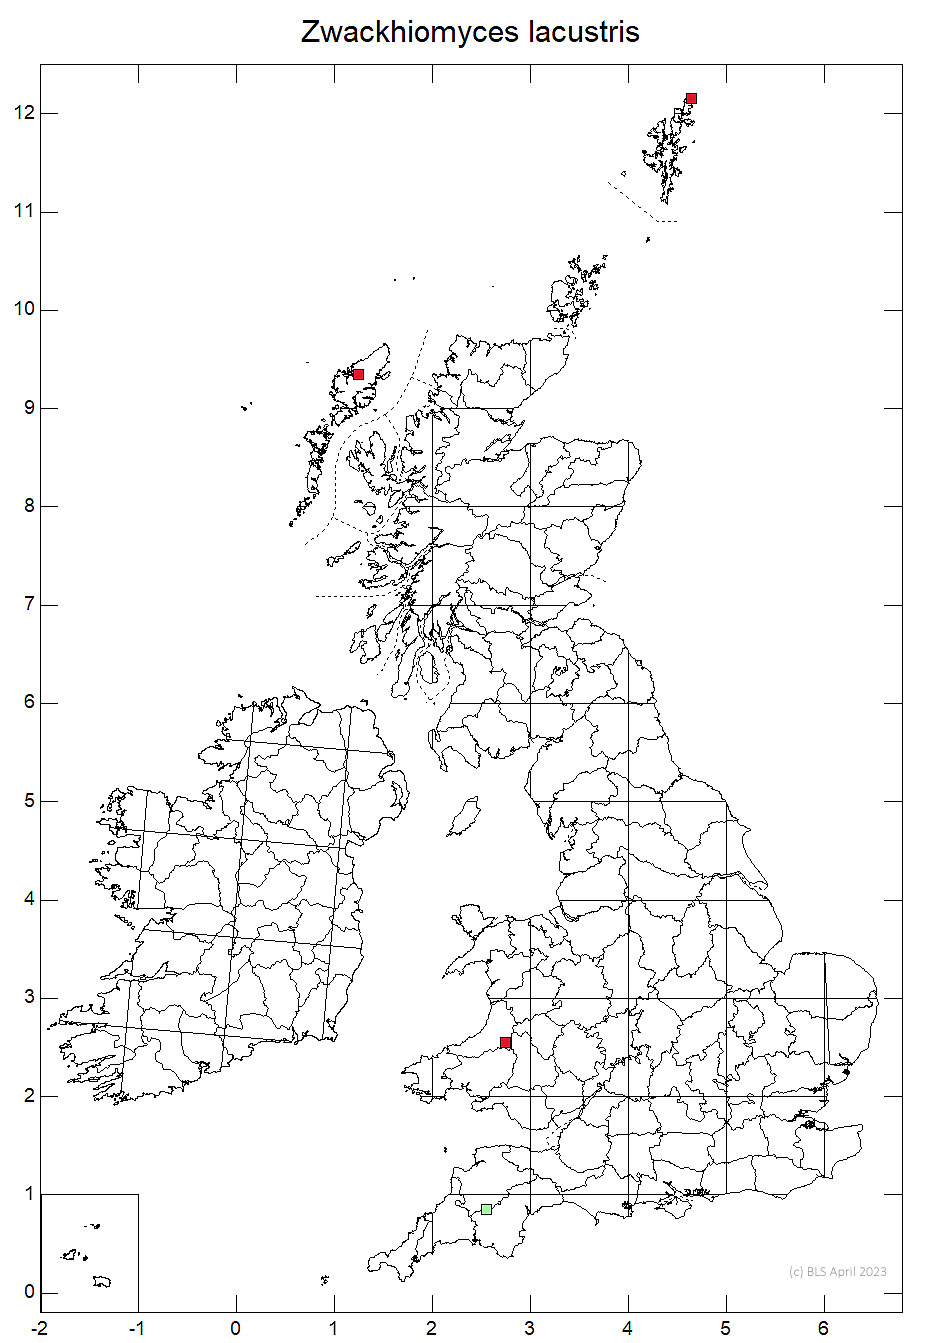 Zwackhiomyces lacustris 10km sq distribution map